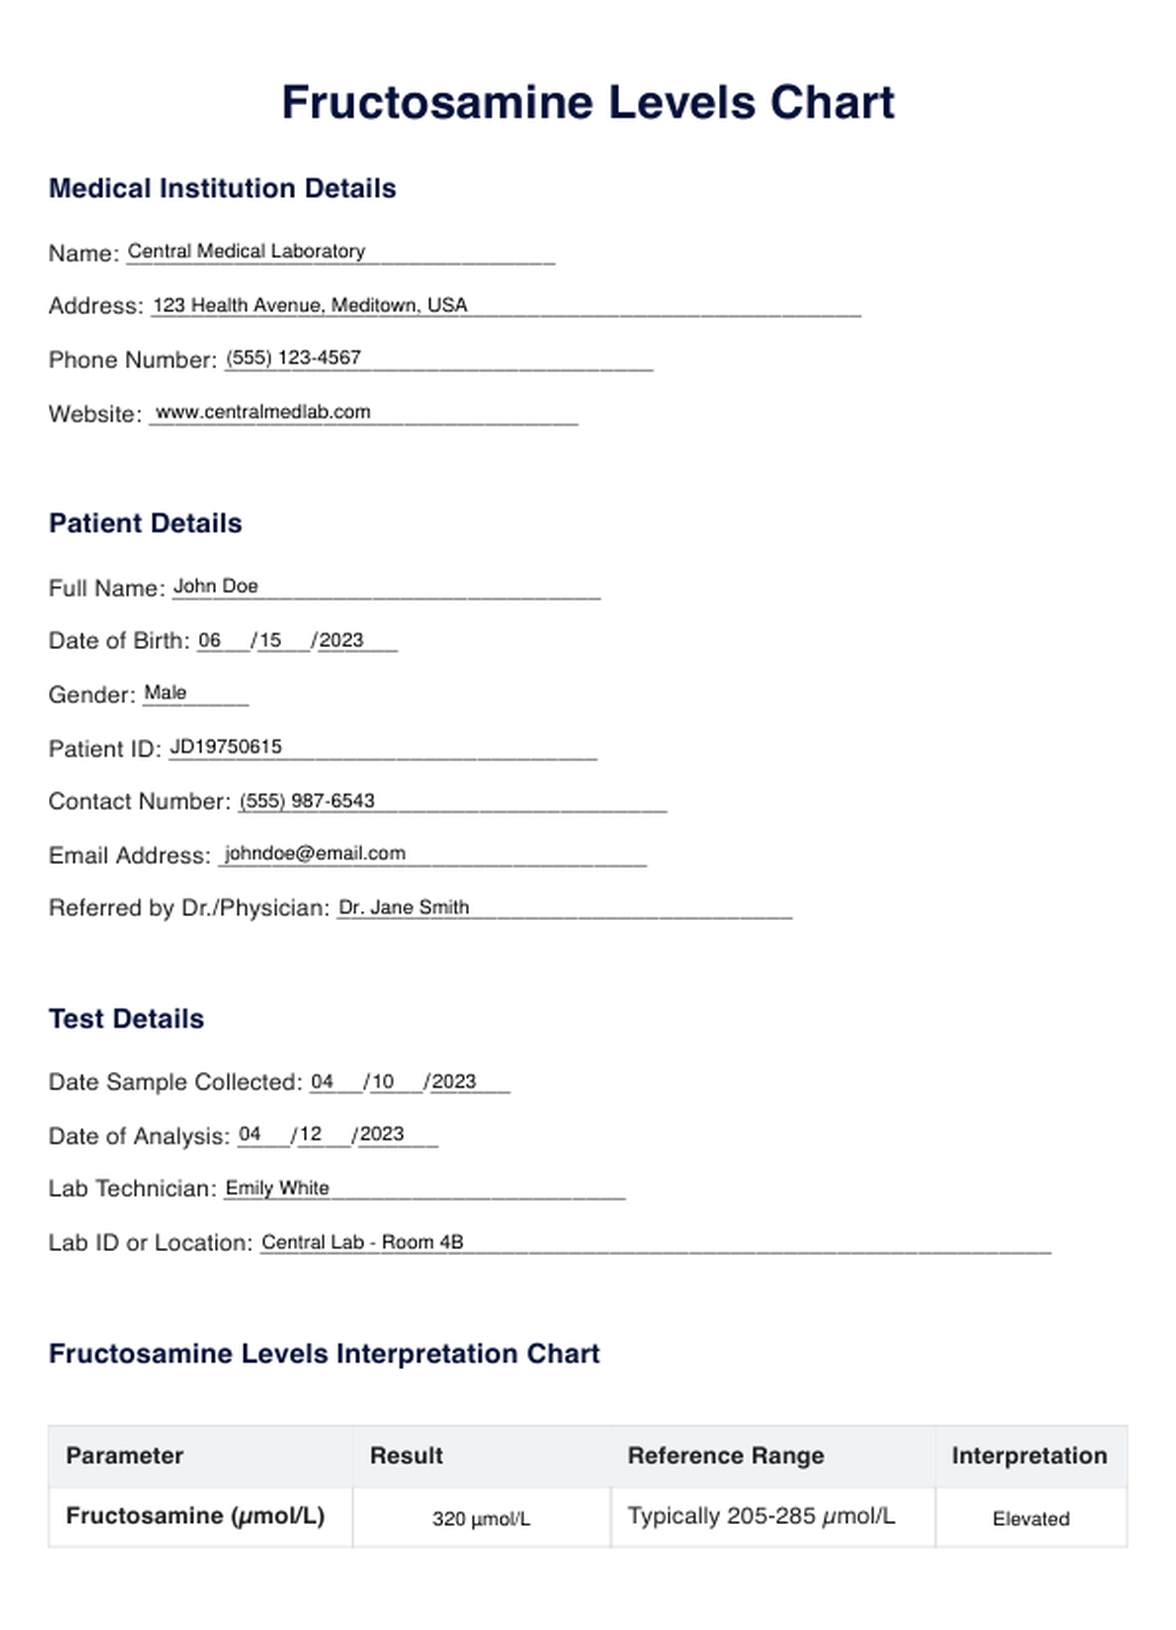 Fructosamine Levels PDF Example